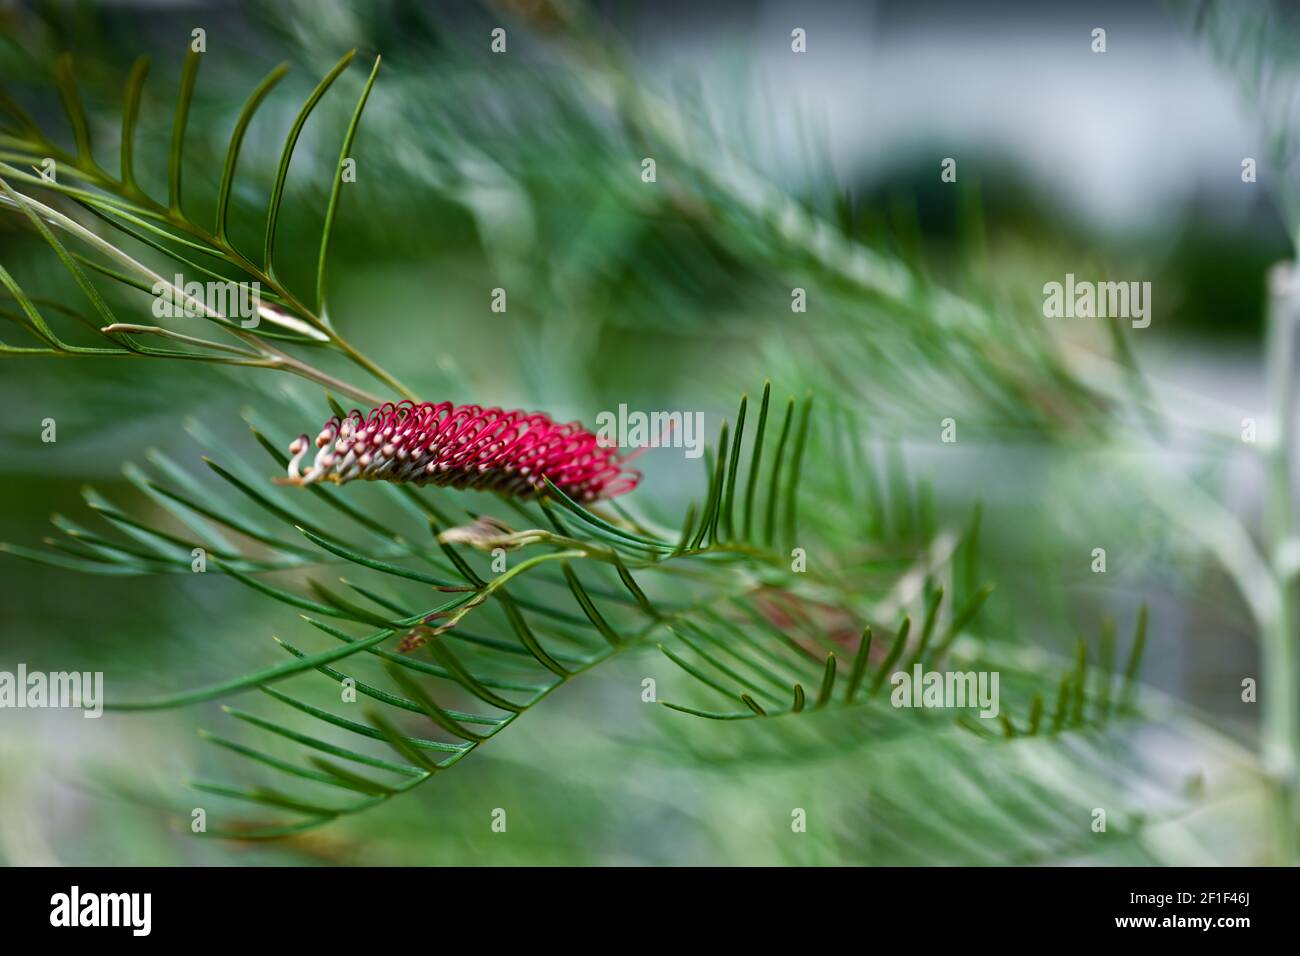 mundo natural y naturaleza foto de fondo, planta roja rodeada de verde, foto de planta inusual Foto de stock